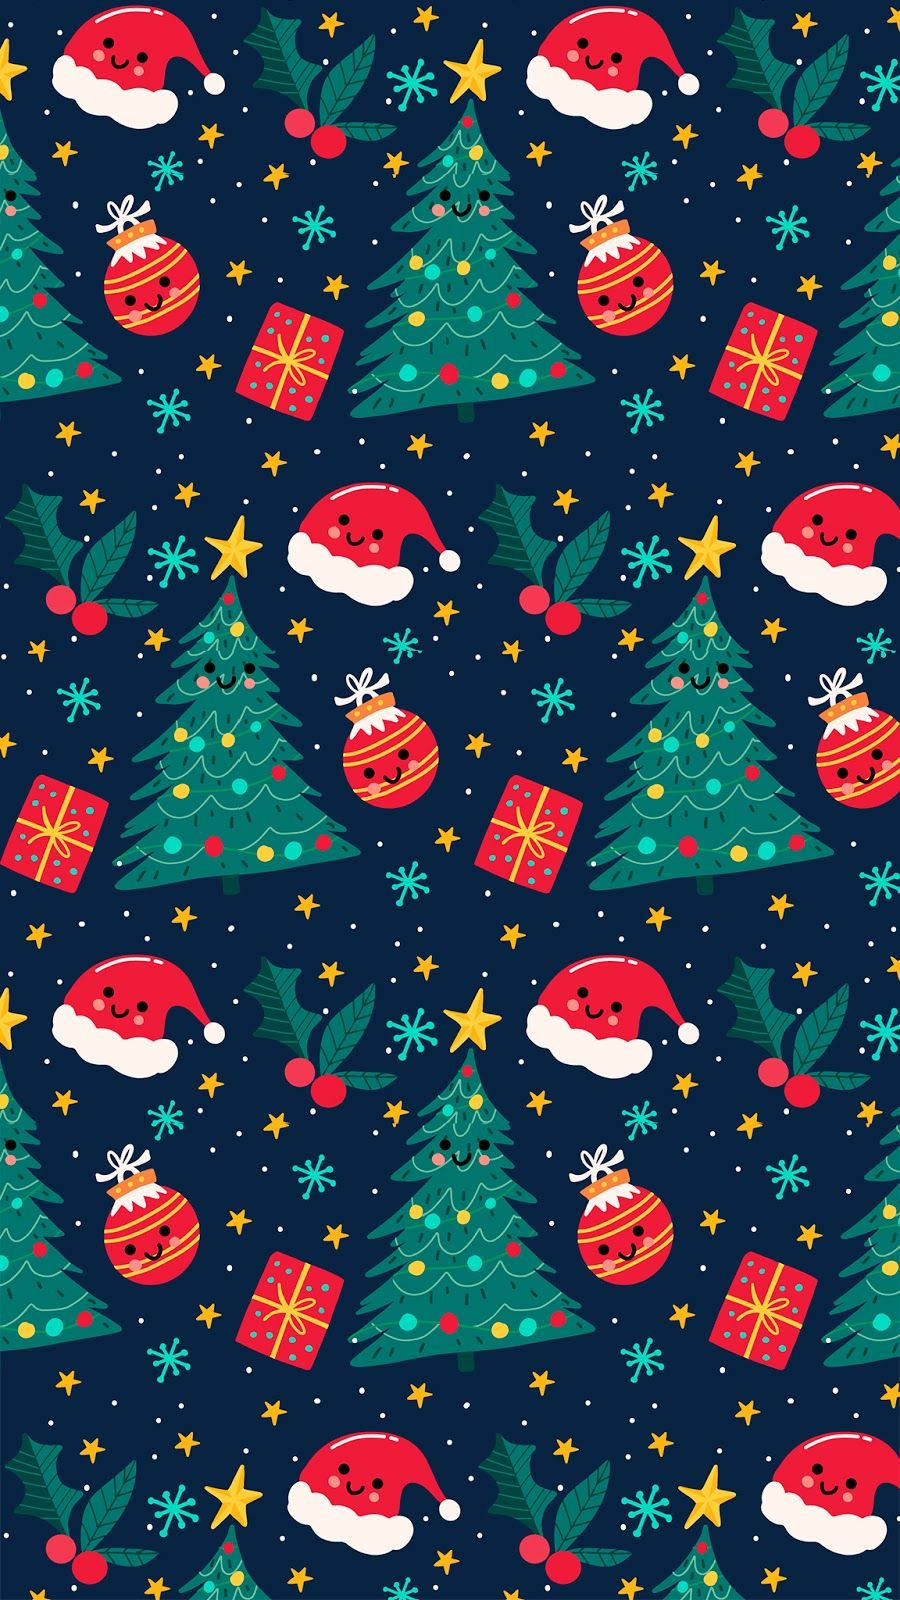 Christmas Wallpapers